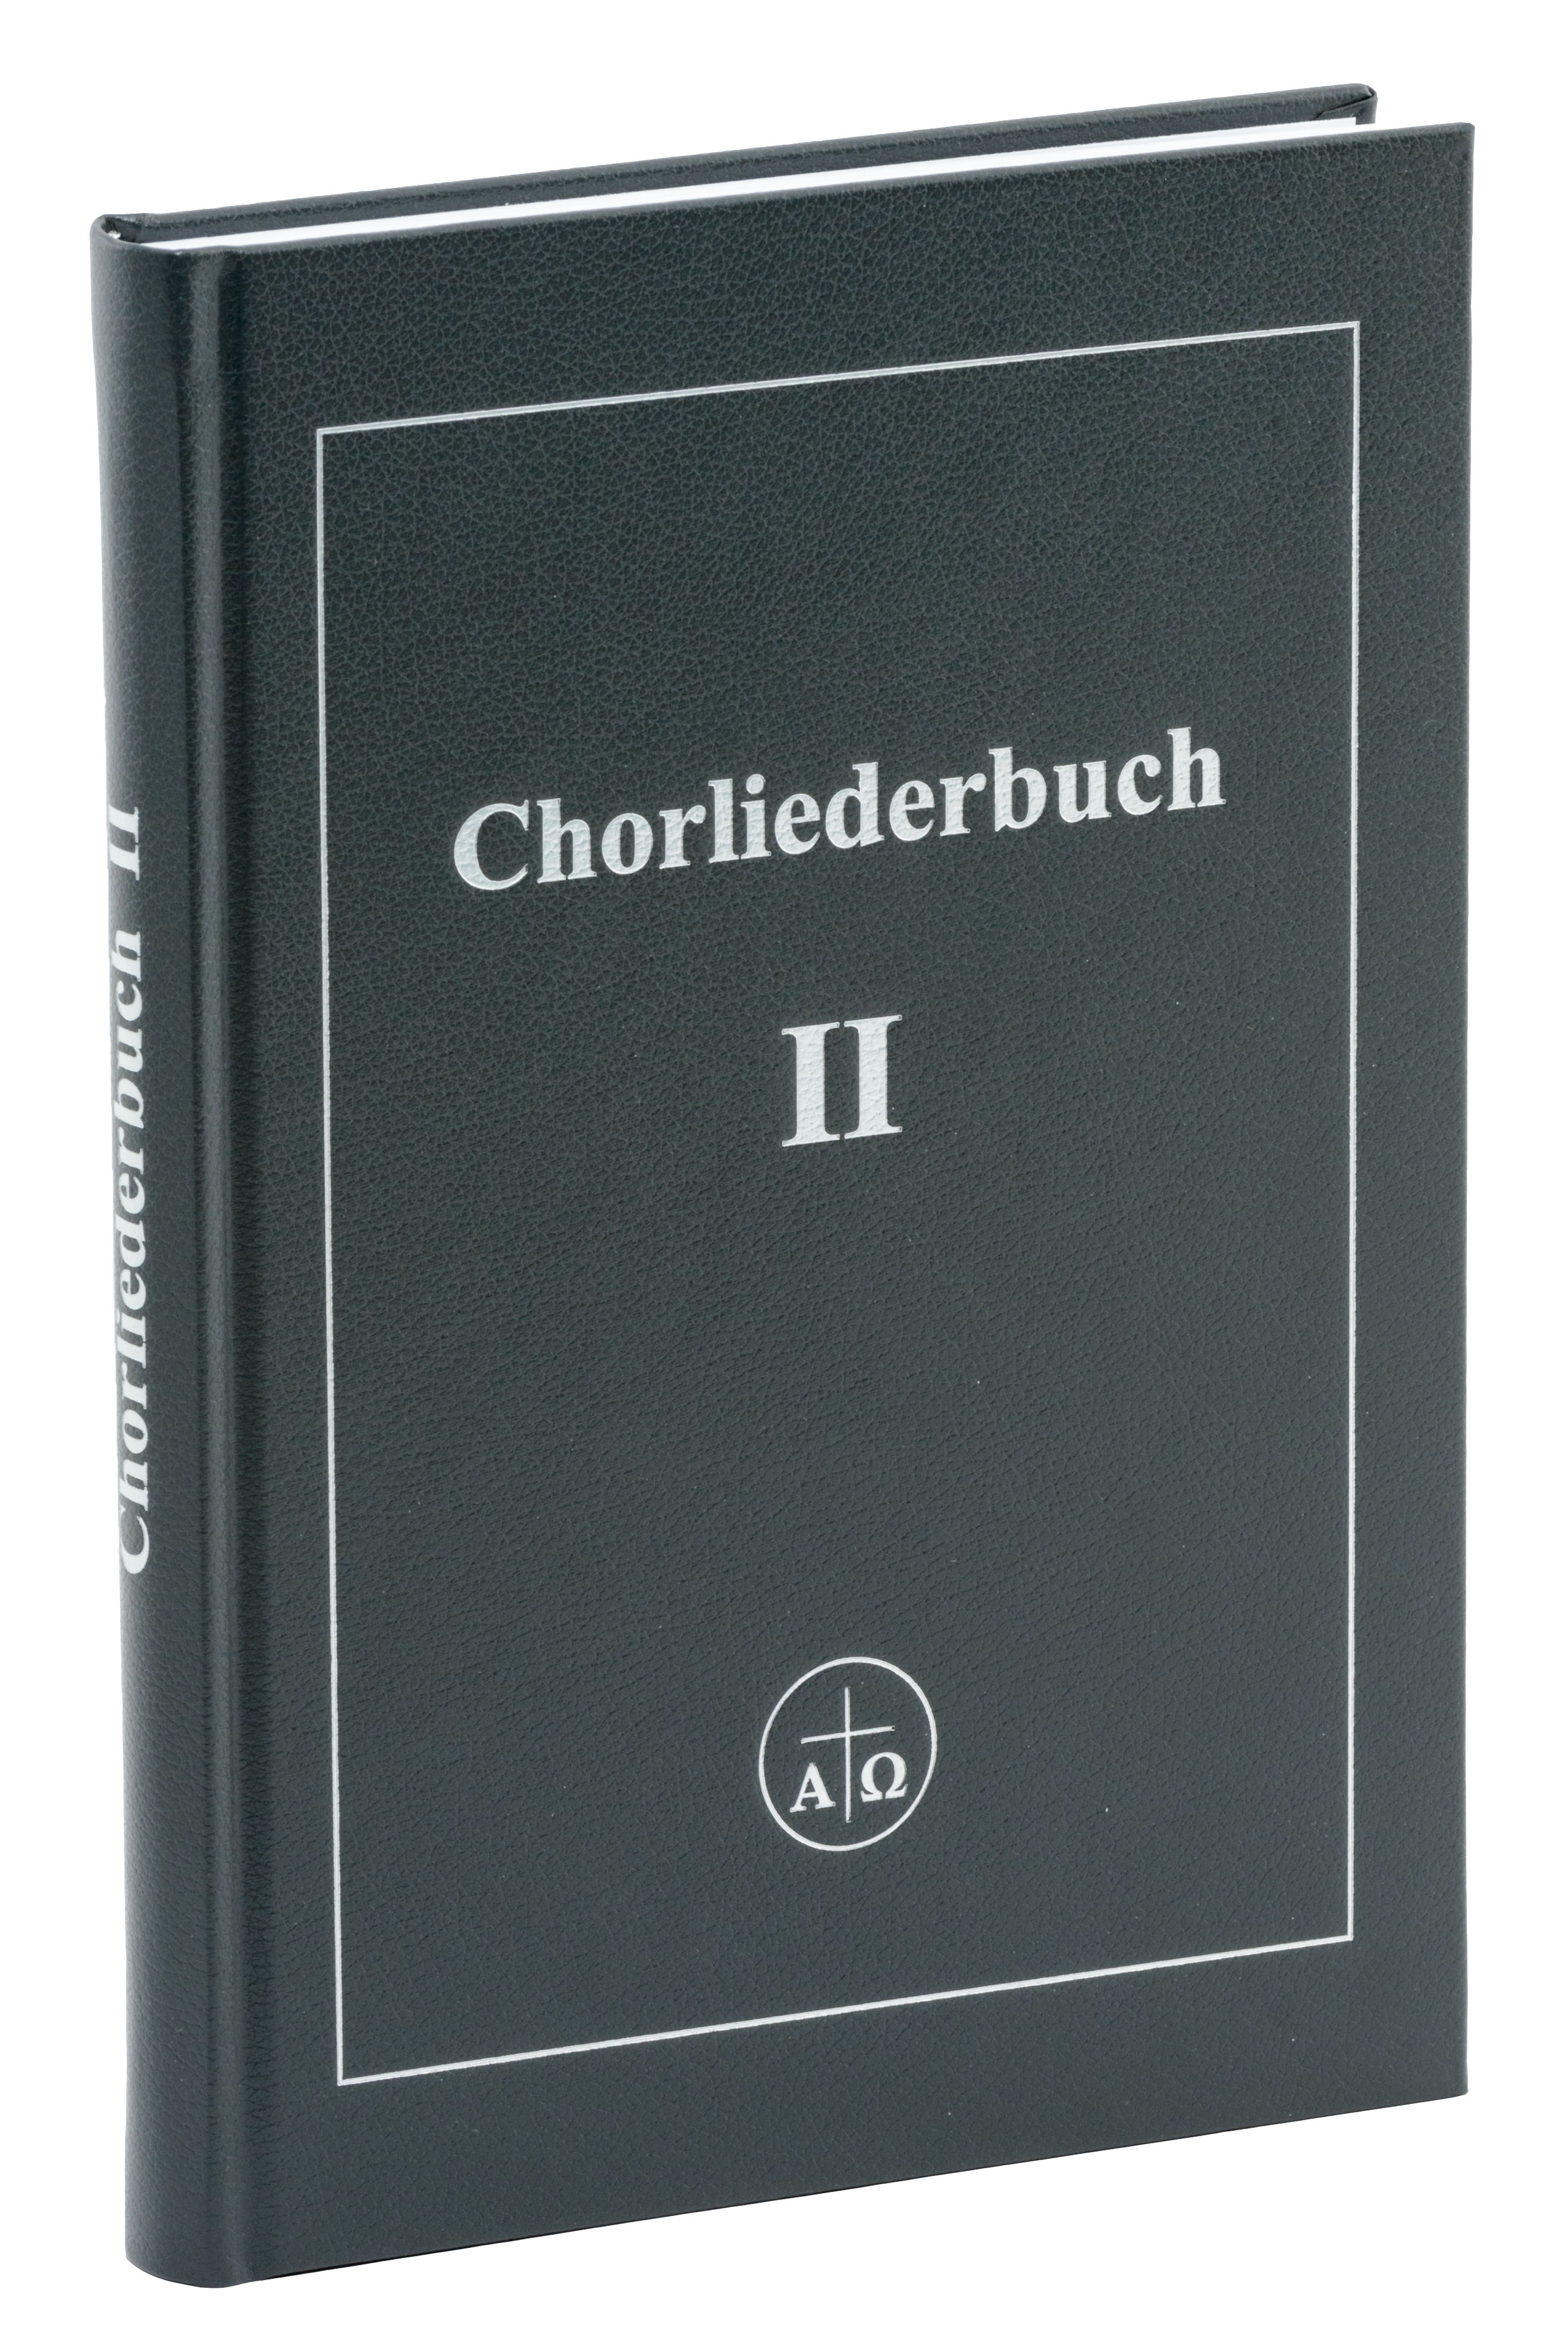 Chorliederbuch II